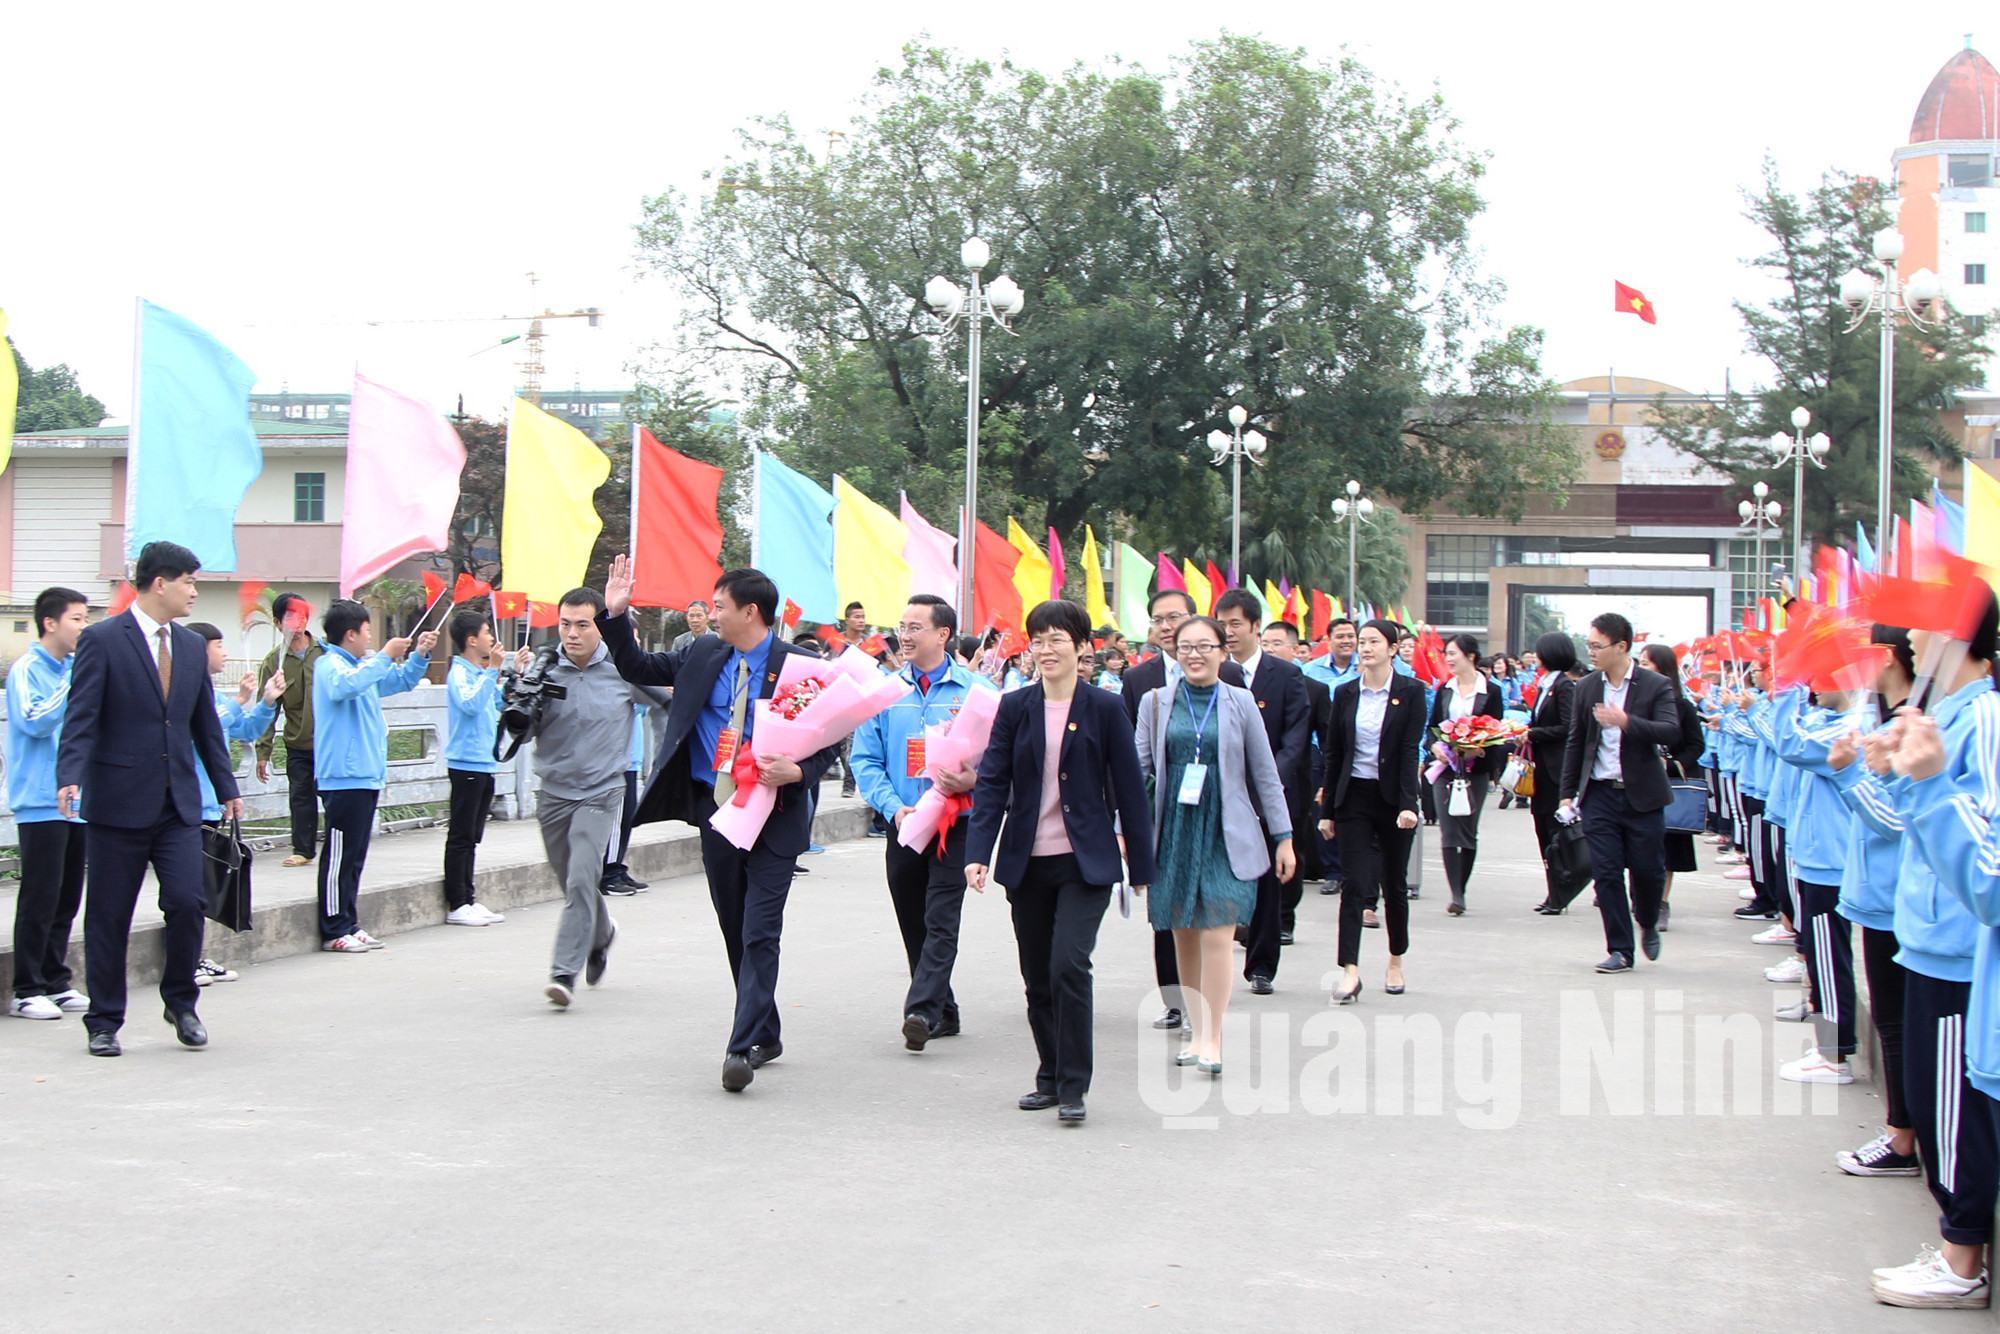 Thanh thiếu niên tỉnh Quảng Tây (Trung Quốc) vui mừng chào đón đoàn đại biểu thanh niên tỉnh Quảng Ninh tham gia chương trình giao lưu hữu nghị thanh niên tỉnh Quảng Ninh - Quảng Tây lần thứ II, năm 2017.